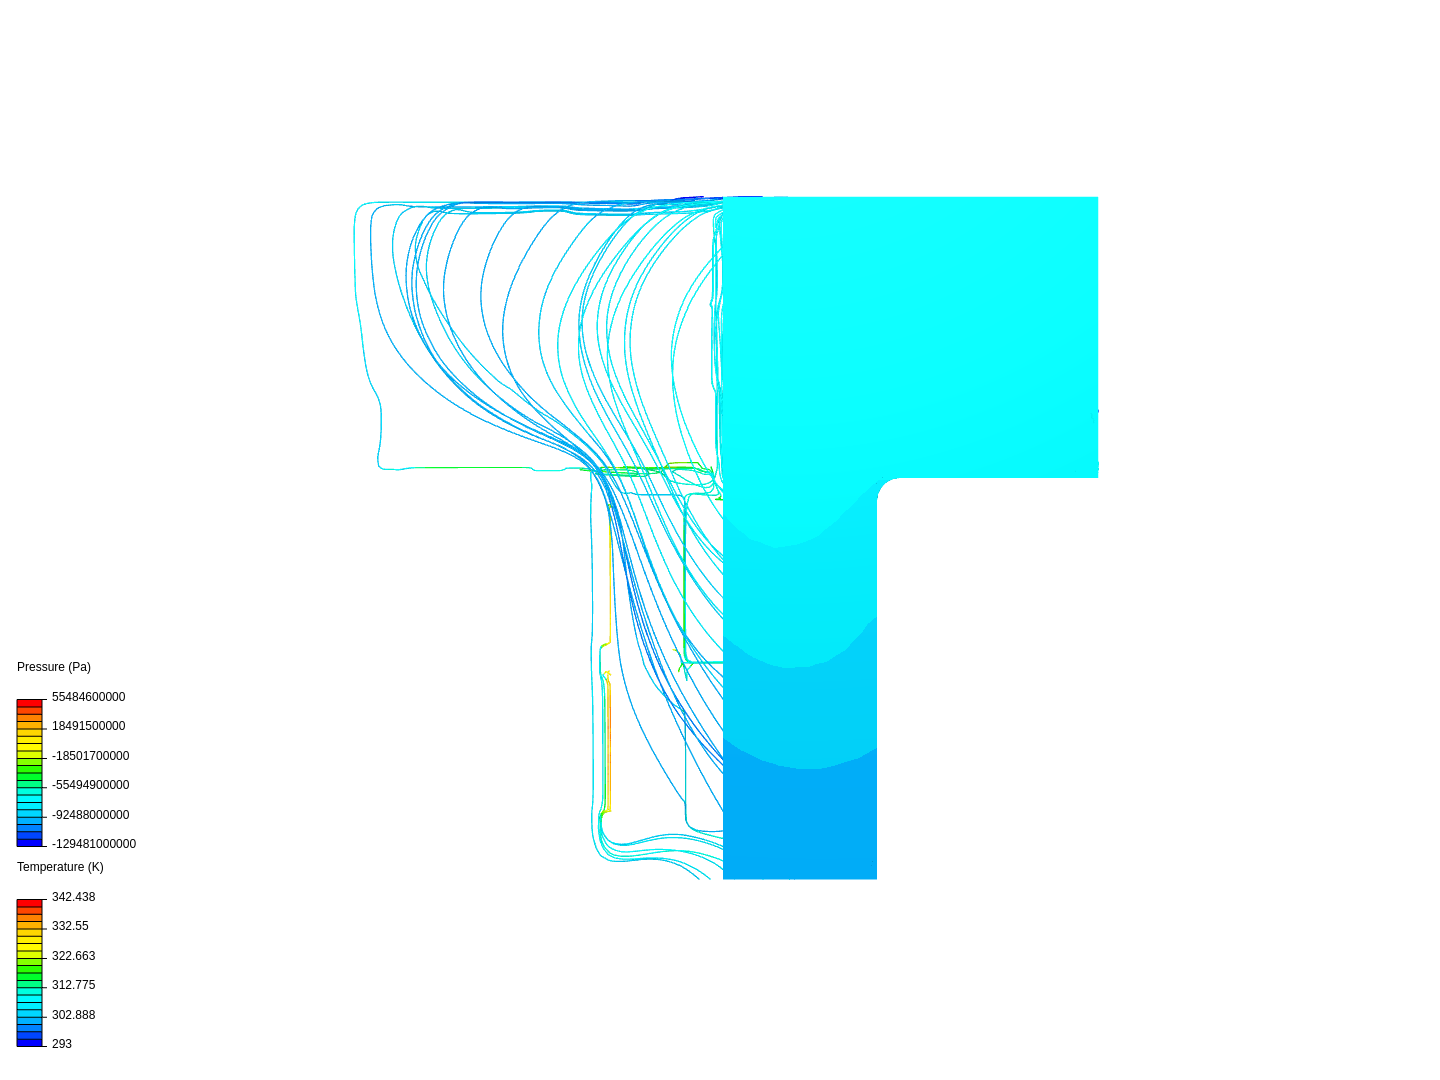 T-shape-3 fans image